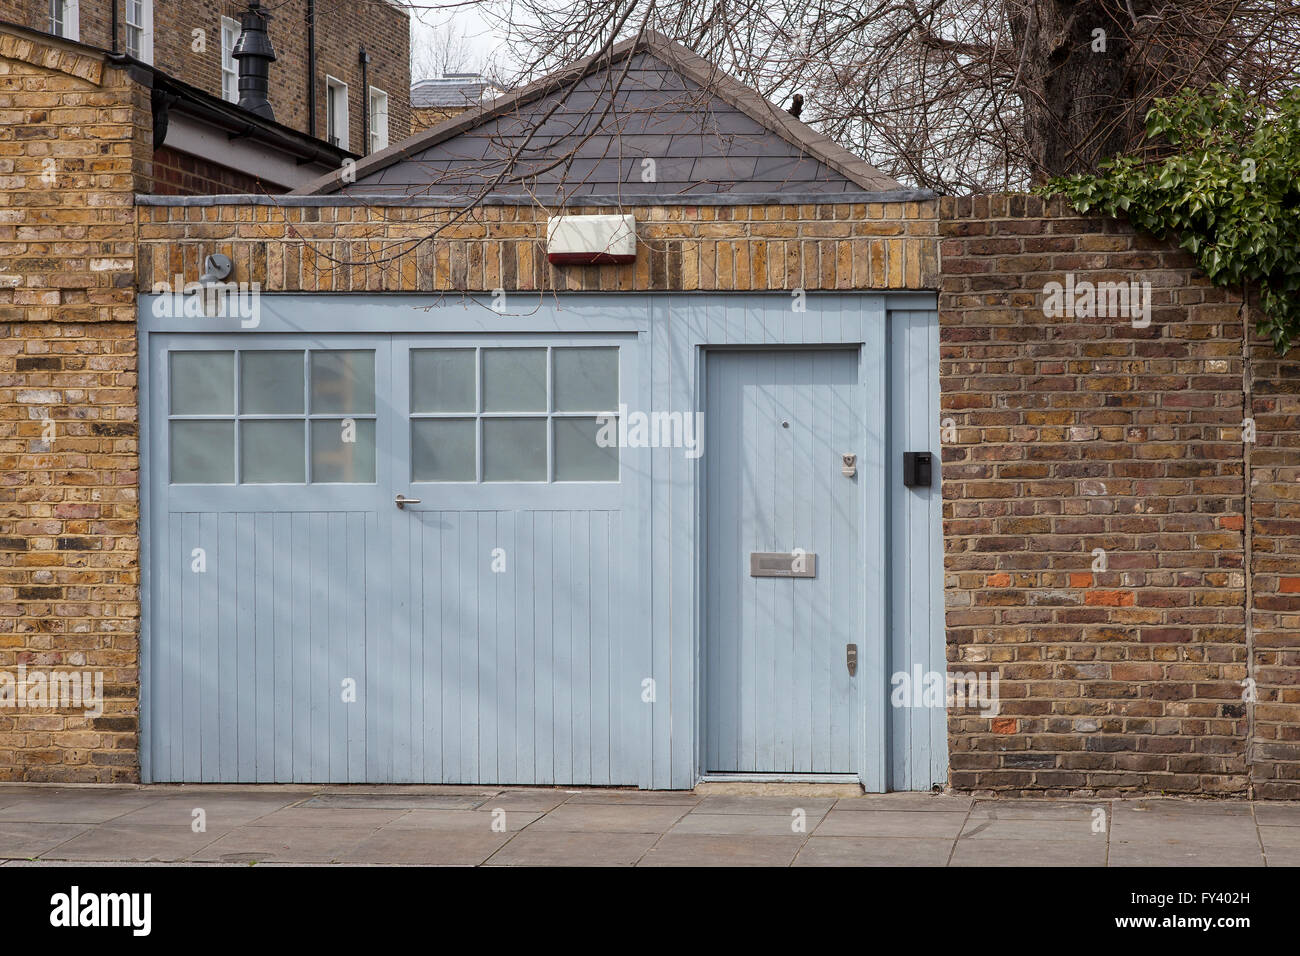 Raum ist ein Problem. Wohnräume sind in London, in der hohen Nachfrage, so dass diese Wohnung aus einer Garage umgewandelt wurde. Stockfoto